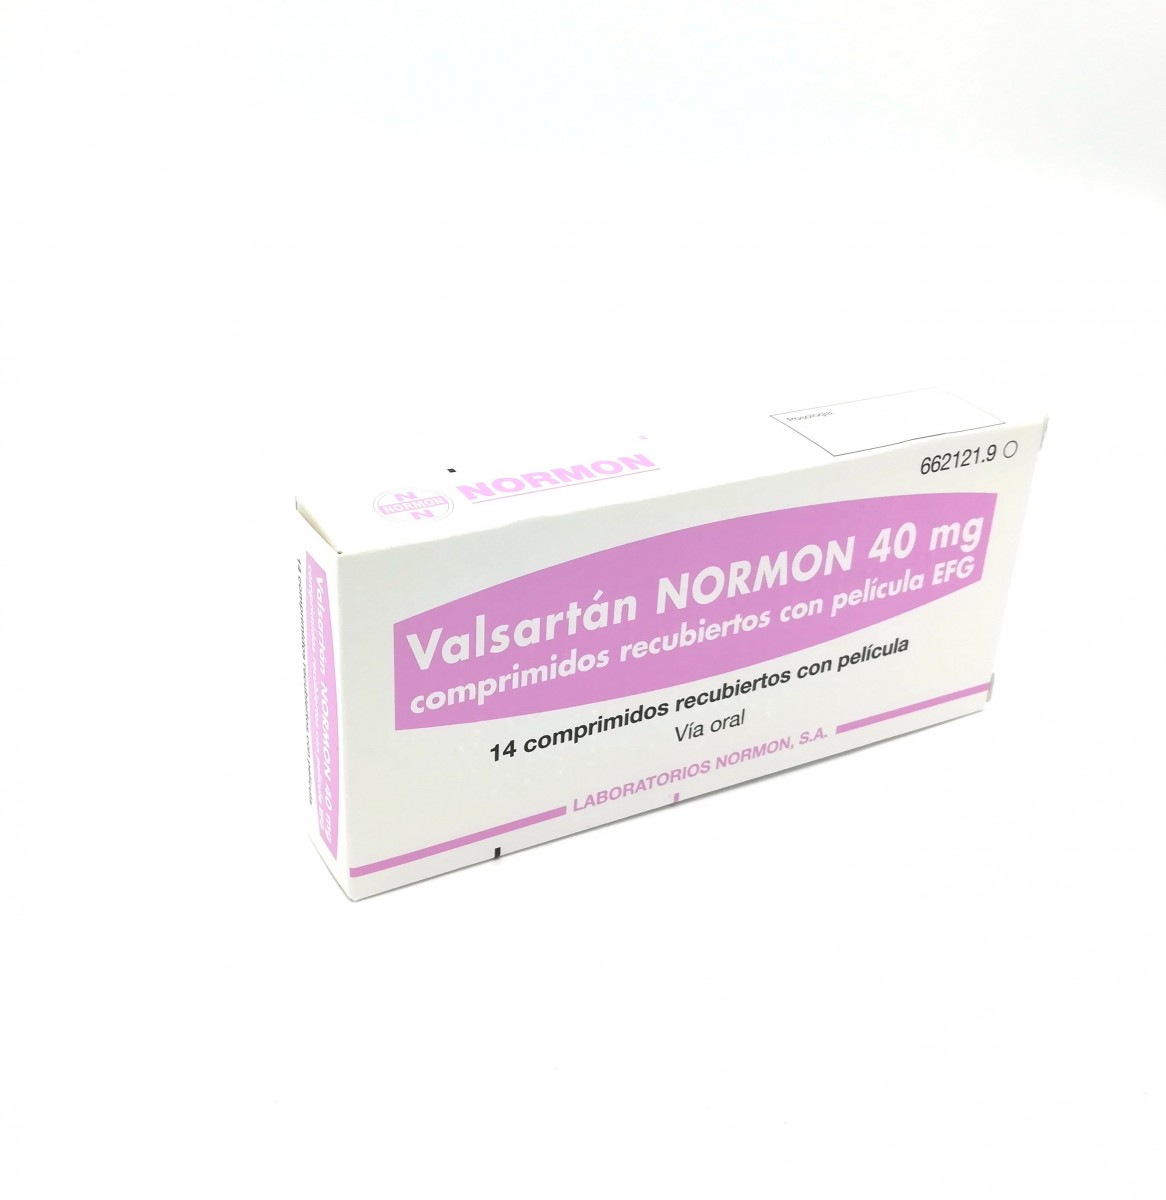 VALSARTAN NORMON 40 mg COMPRIMIDOS RECUBIERTOS CON PELICULA EFG , 14 comprimidos fotografía del envase.